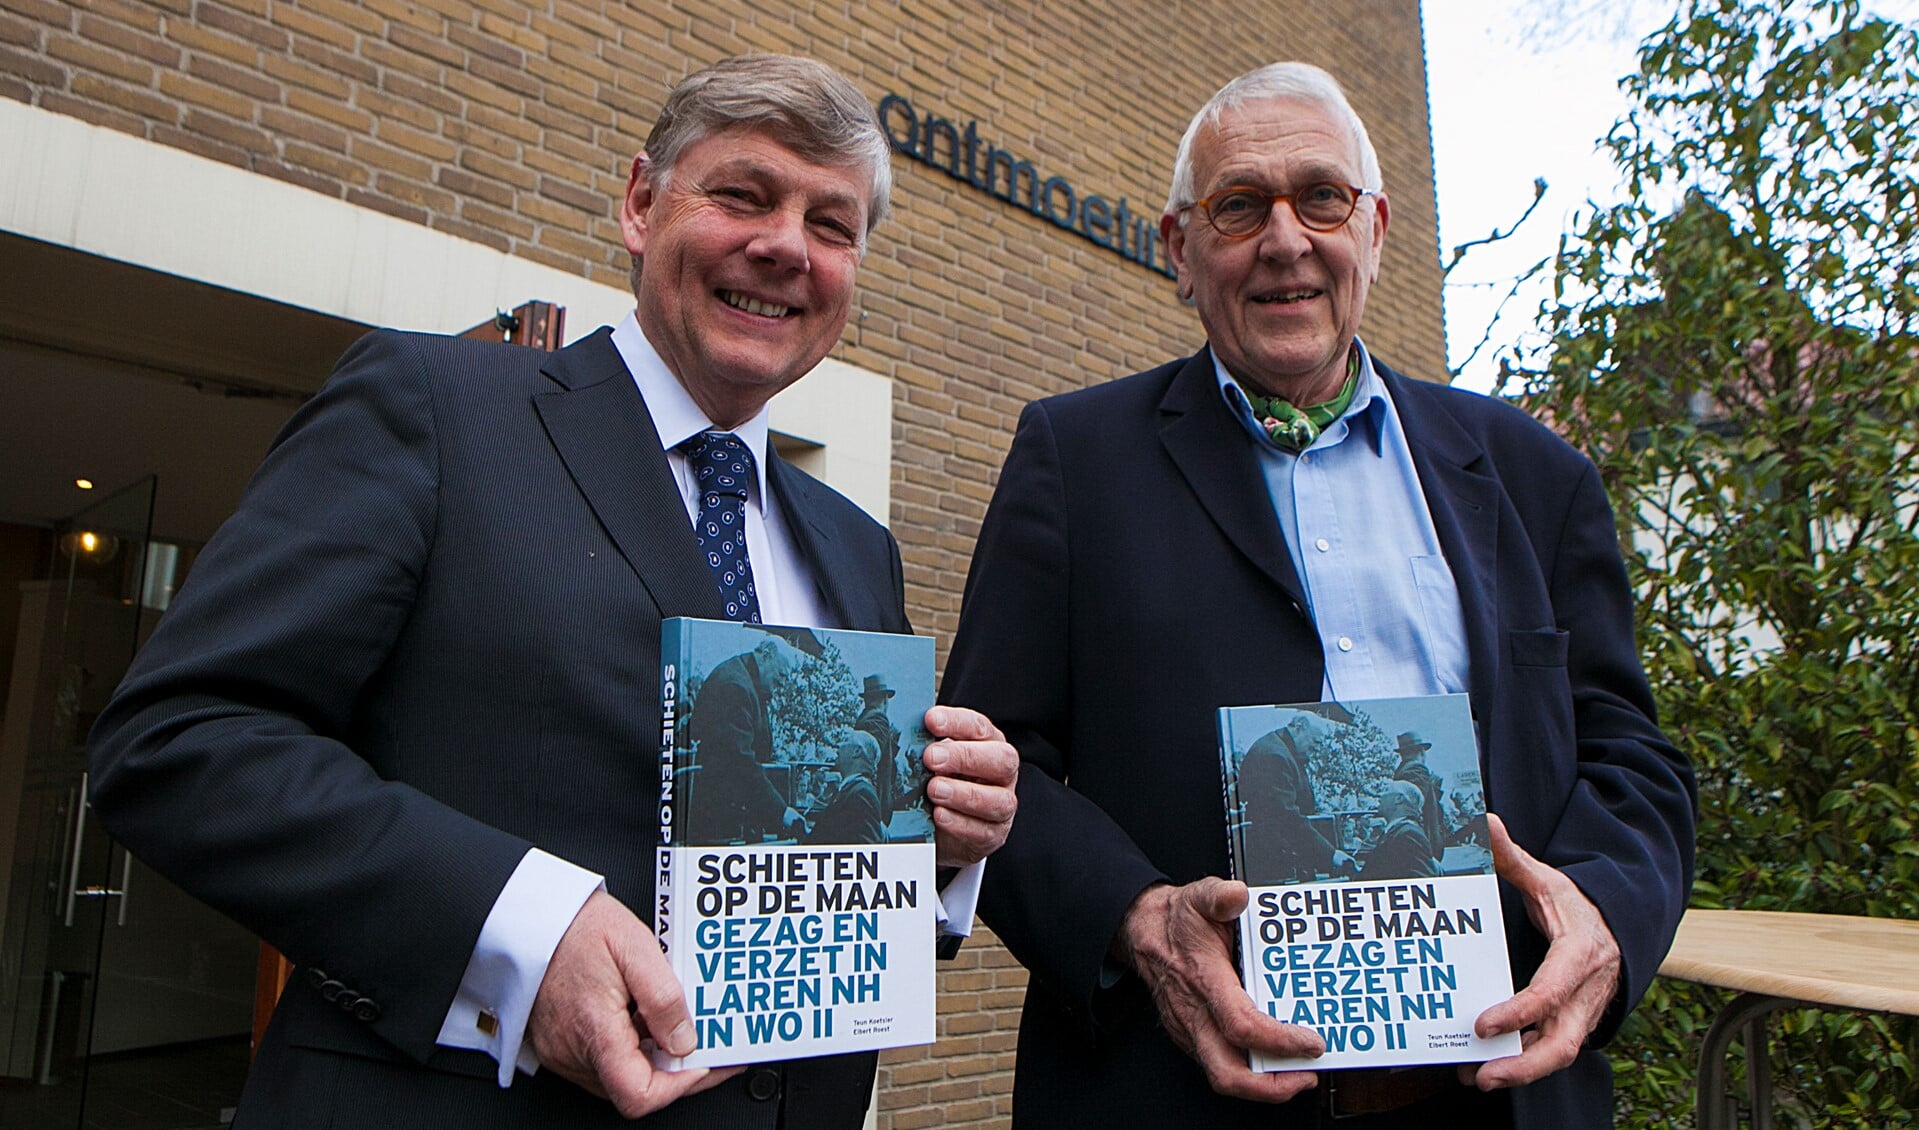 Auteurs Elbert Roest (l) en Teun Koetsier met hun boek Schieten op de maan voor de Ontmoetingskerk.